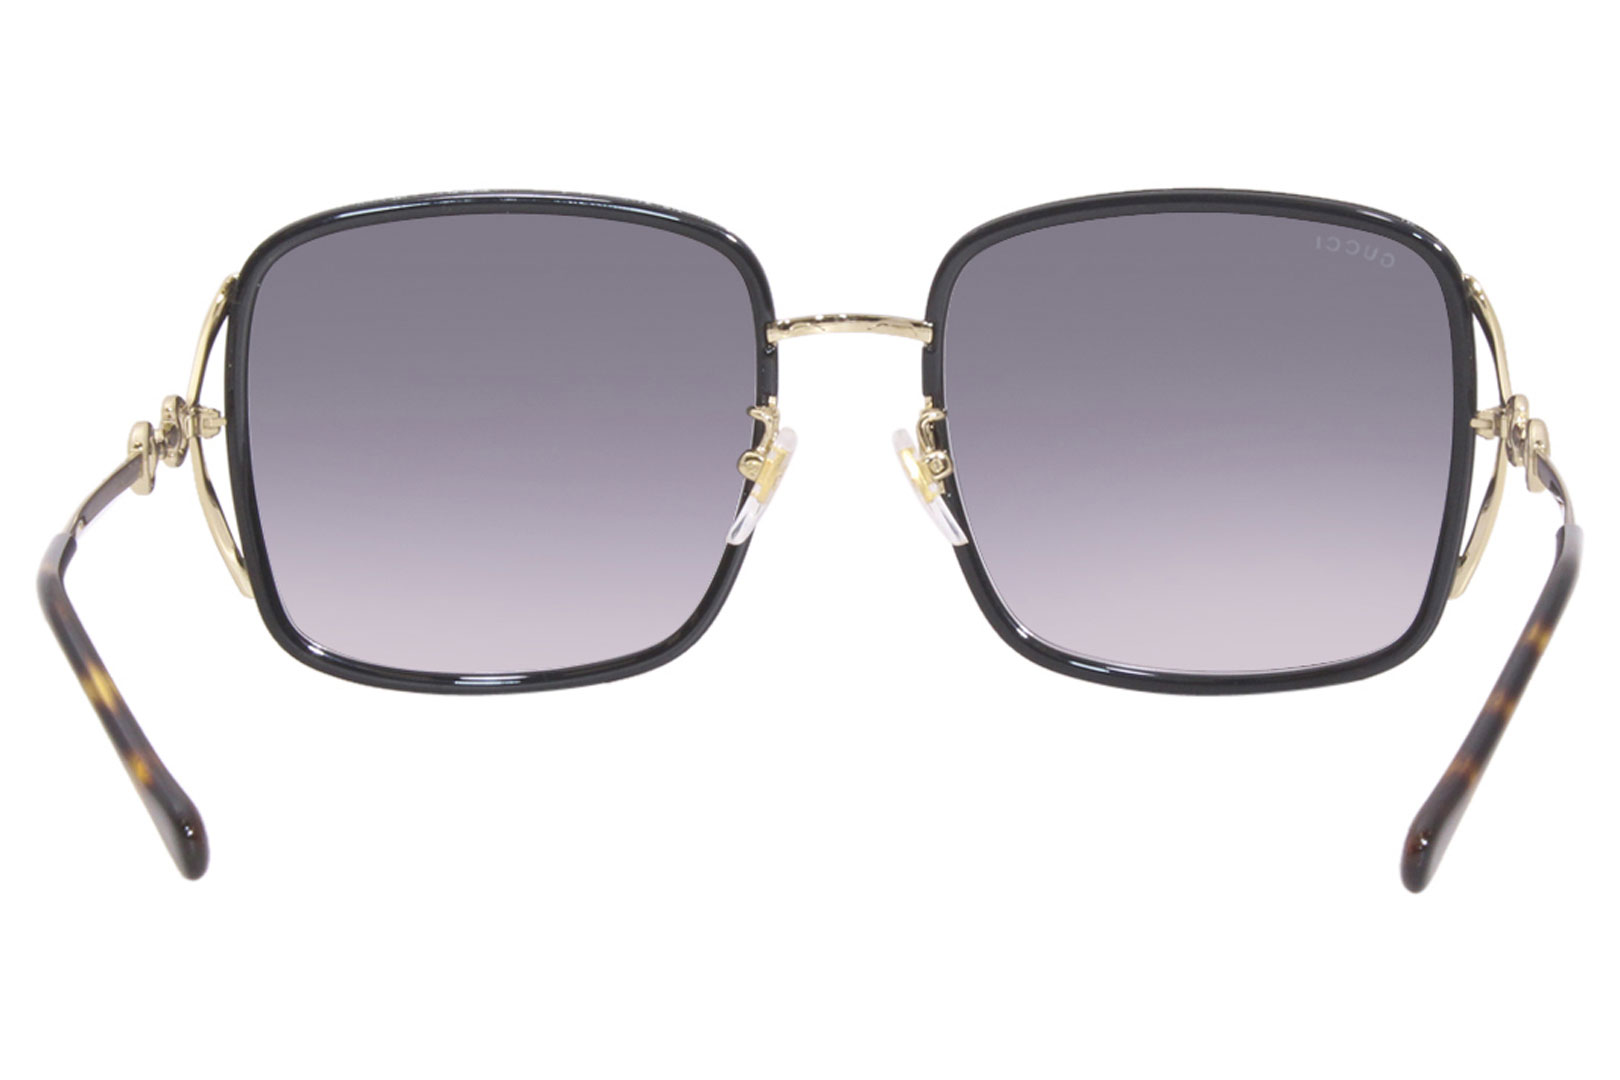 Gucci GG1016SK 001 Sunglasses Women's Black/Gold/Grey Gradient 58-20 ...